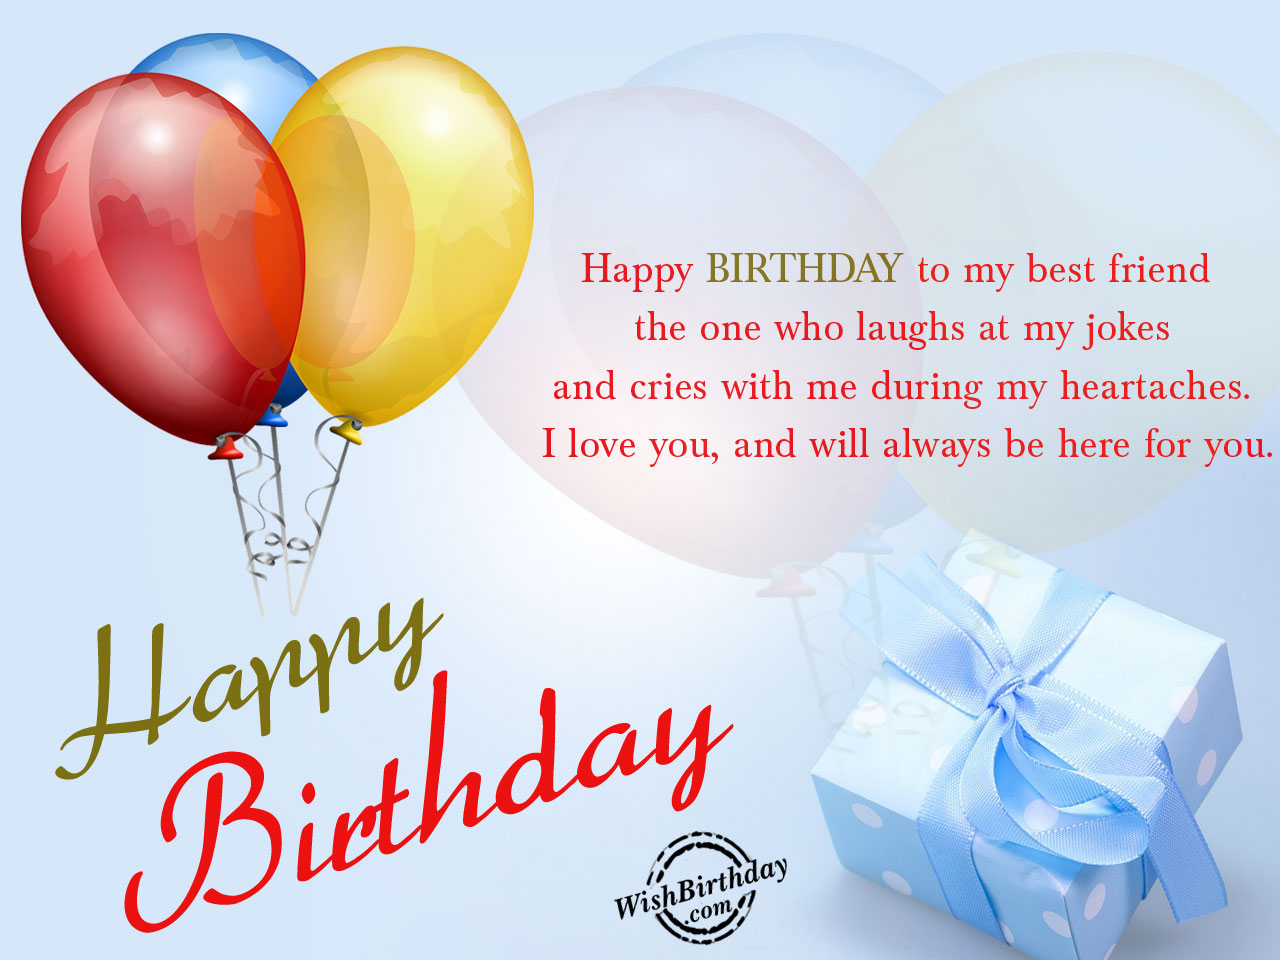 Happy birthday to my best friend - Birthday Wishes, Happy Birthday ...